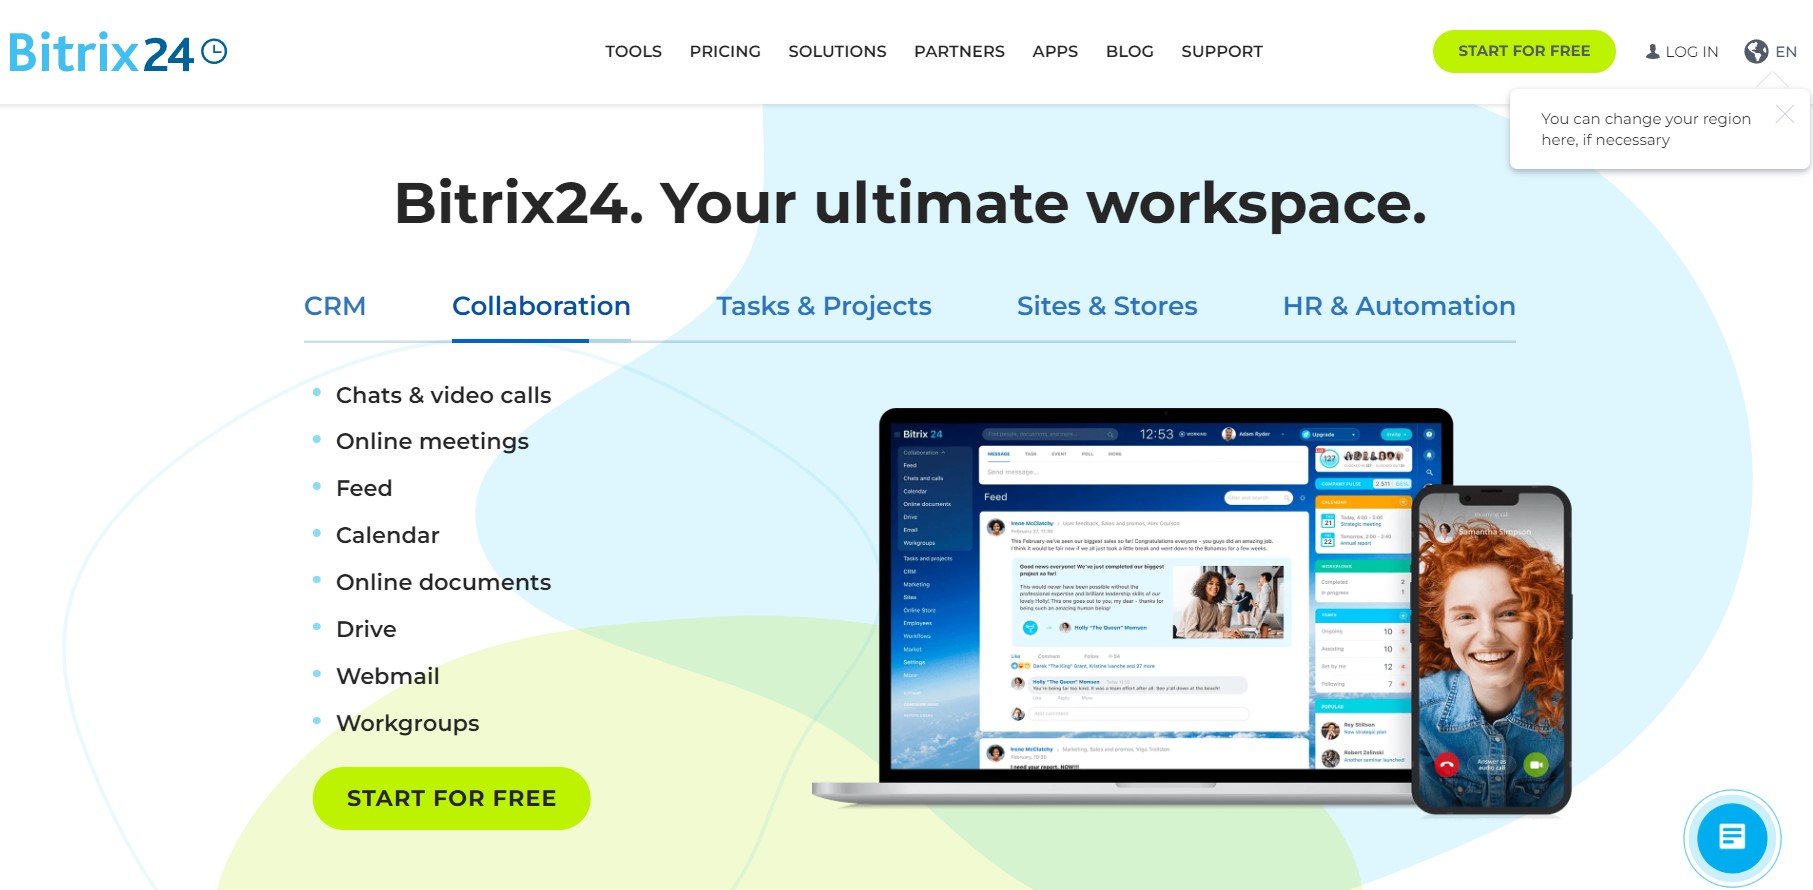 Bitrix24 crm software